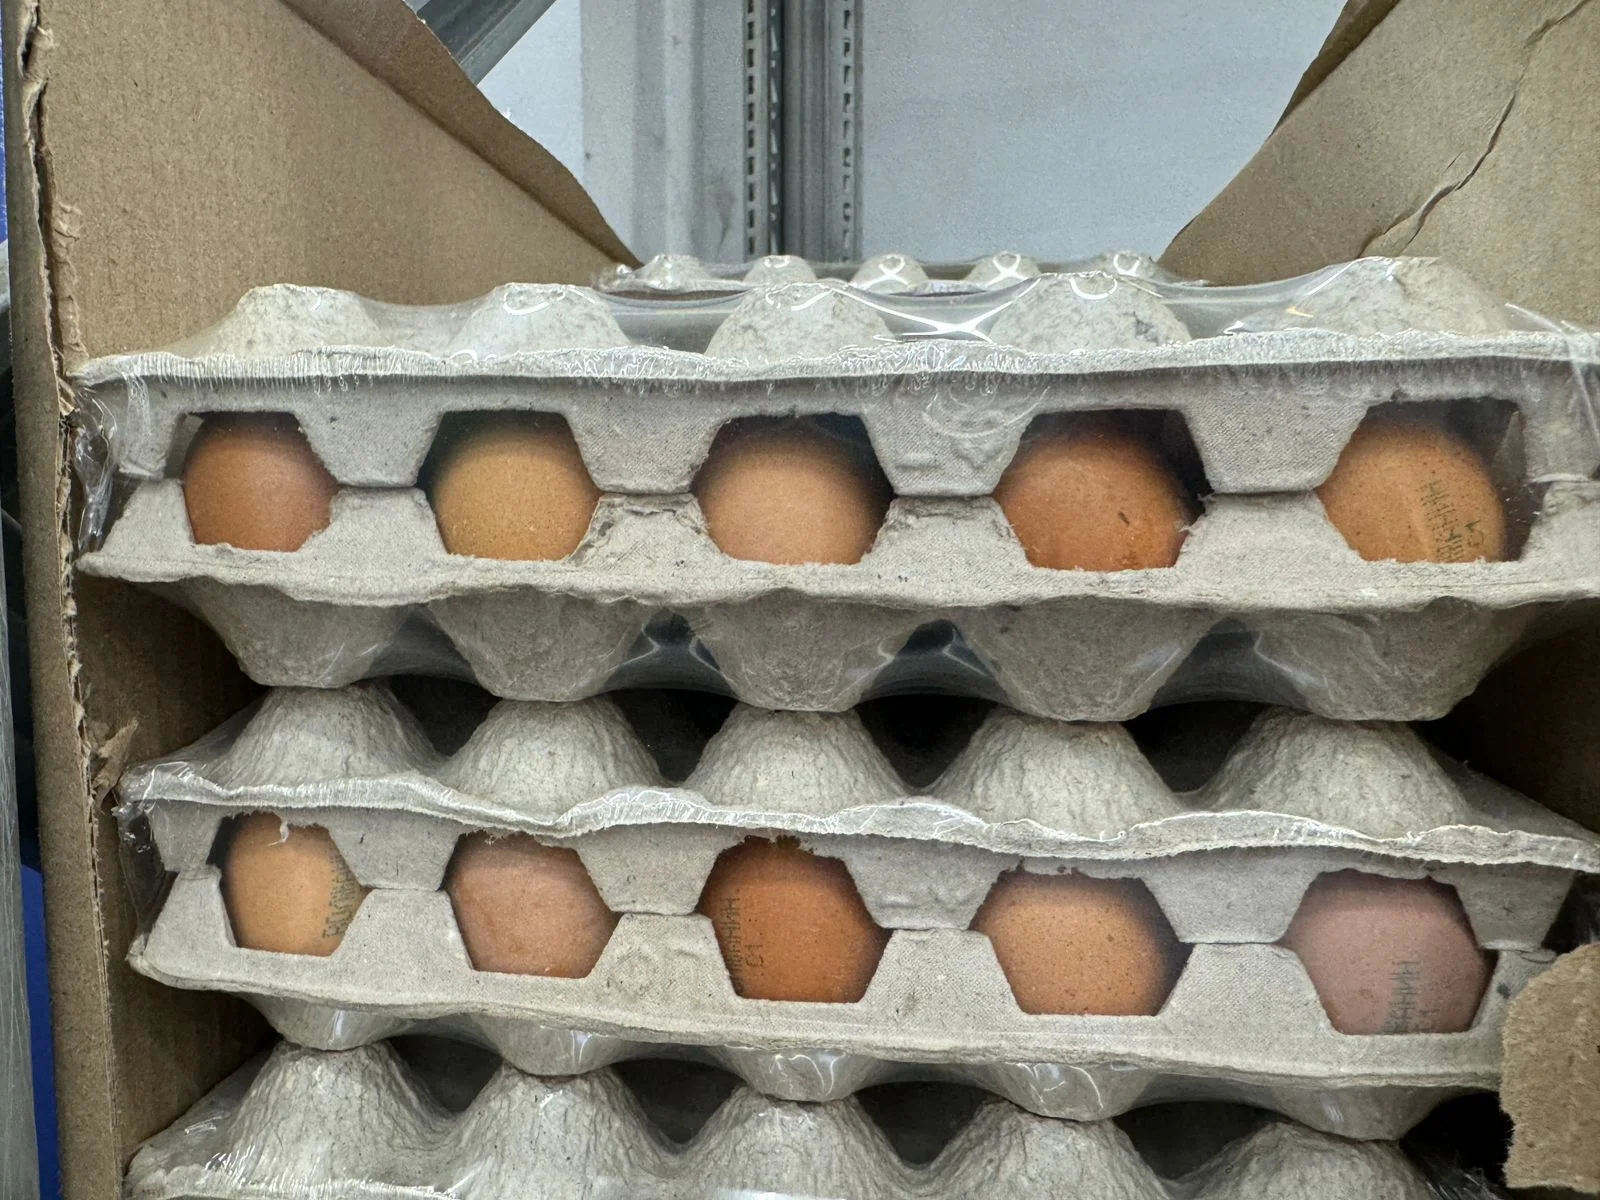 Бизнес заявил о падении на 10% оптовых цен на яйца перед Пасхой на юге России